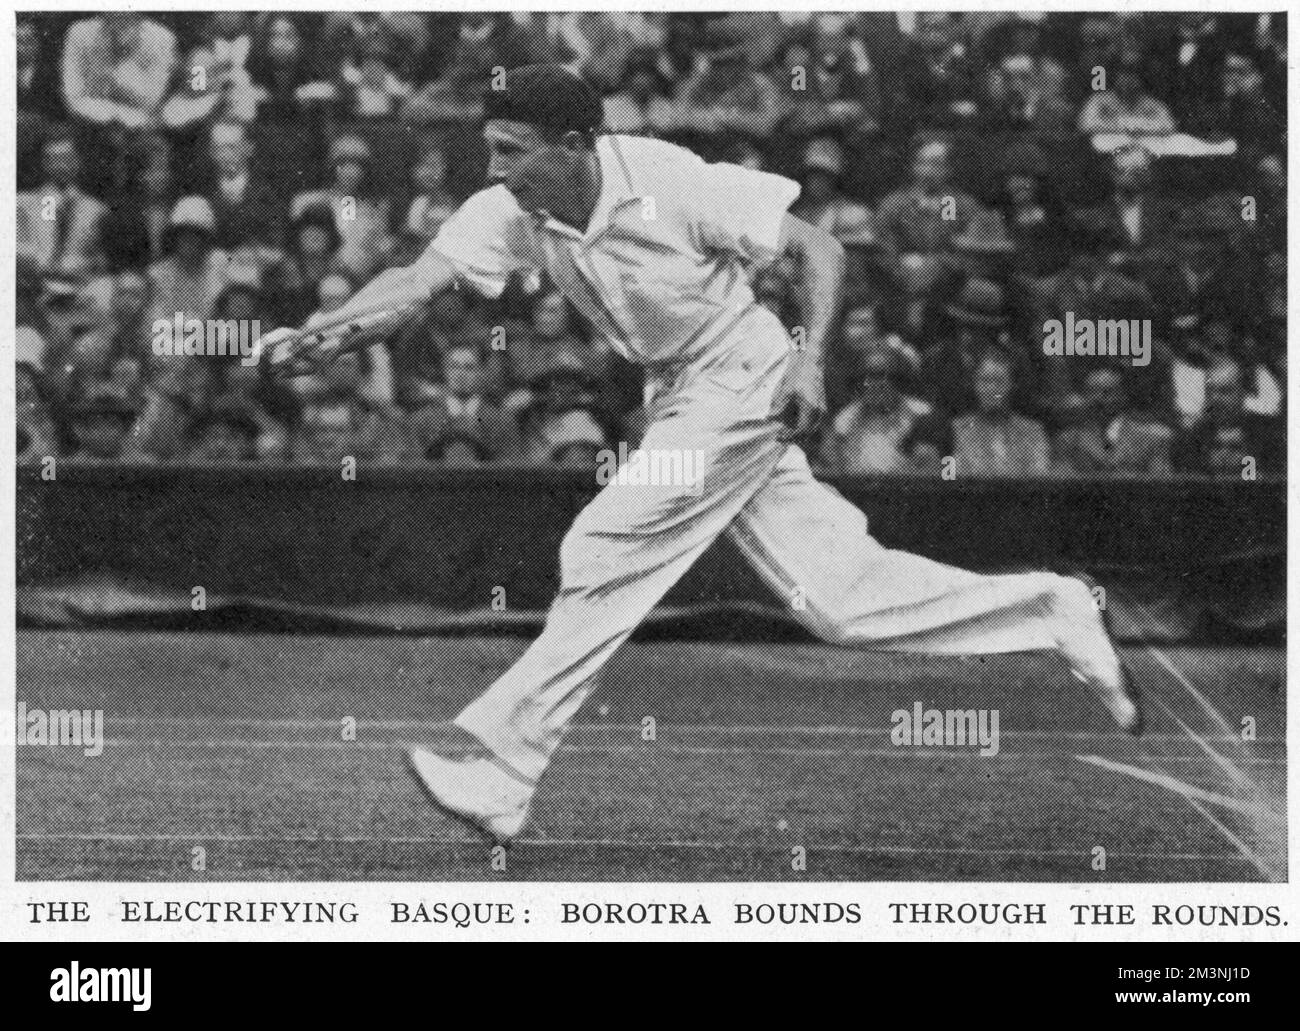 Jean Borotra (1898-1994), joueur de tennis français connu sous le nom de 'Basque Limiting' (bien que le Sporting illustré et dramatique News le décrit ici comme le 'Basque électrifiant'), photographié ici en action lors d'un match à Wimbledon en 1929 portant son béret emblématique. Date: 1929 Banque D'Images